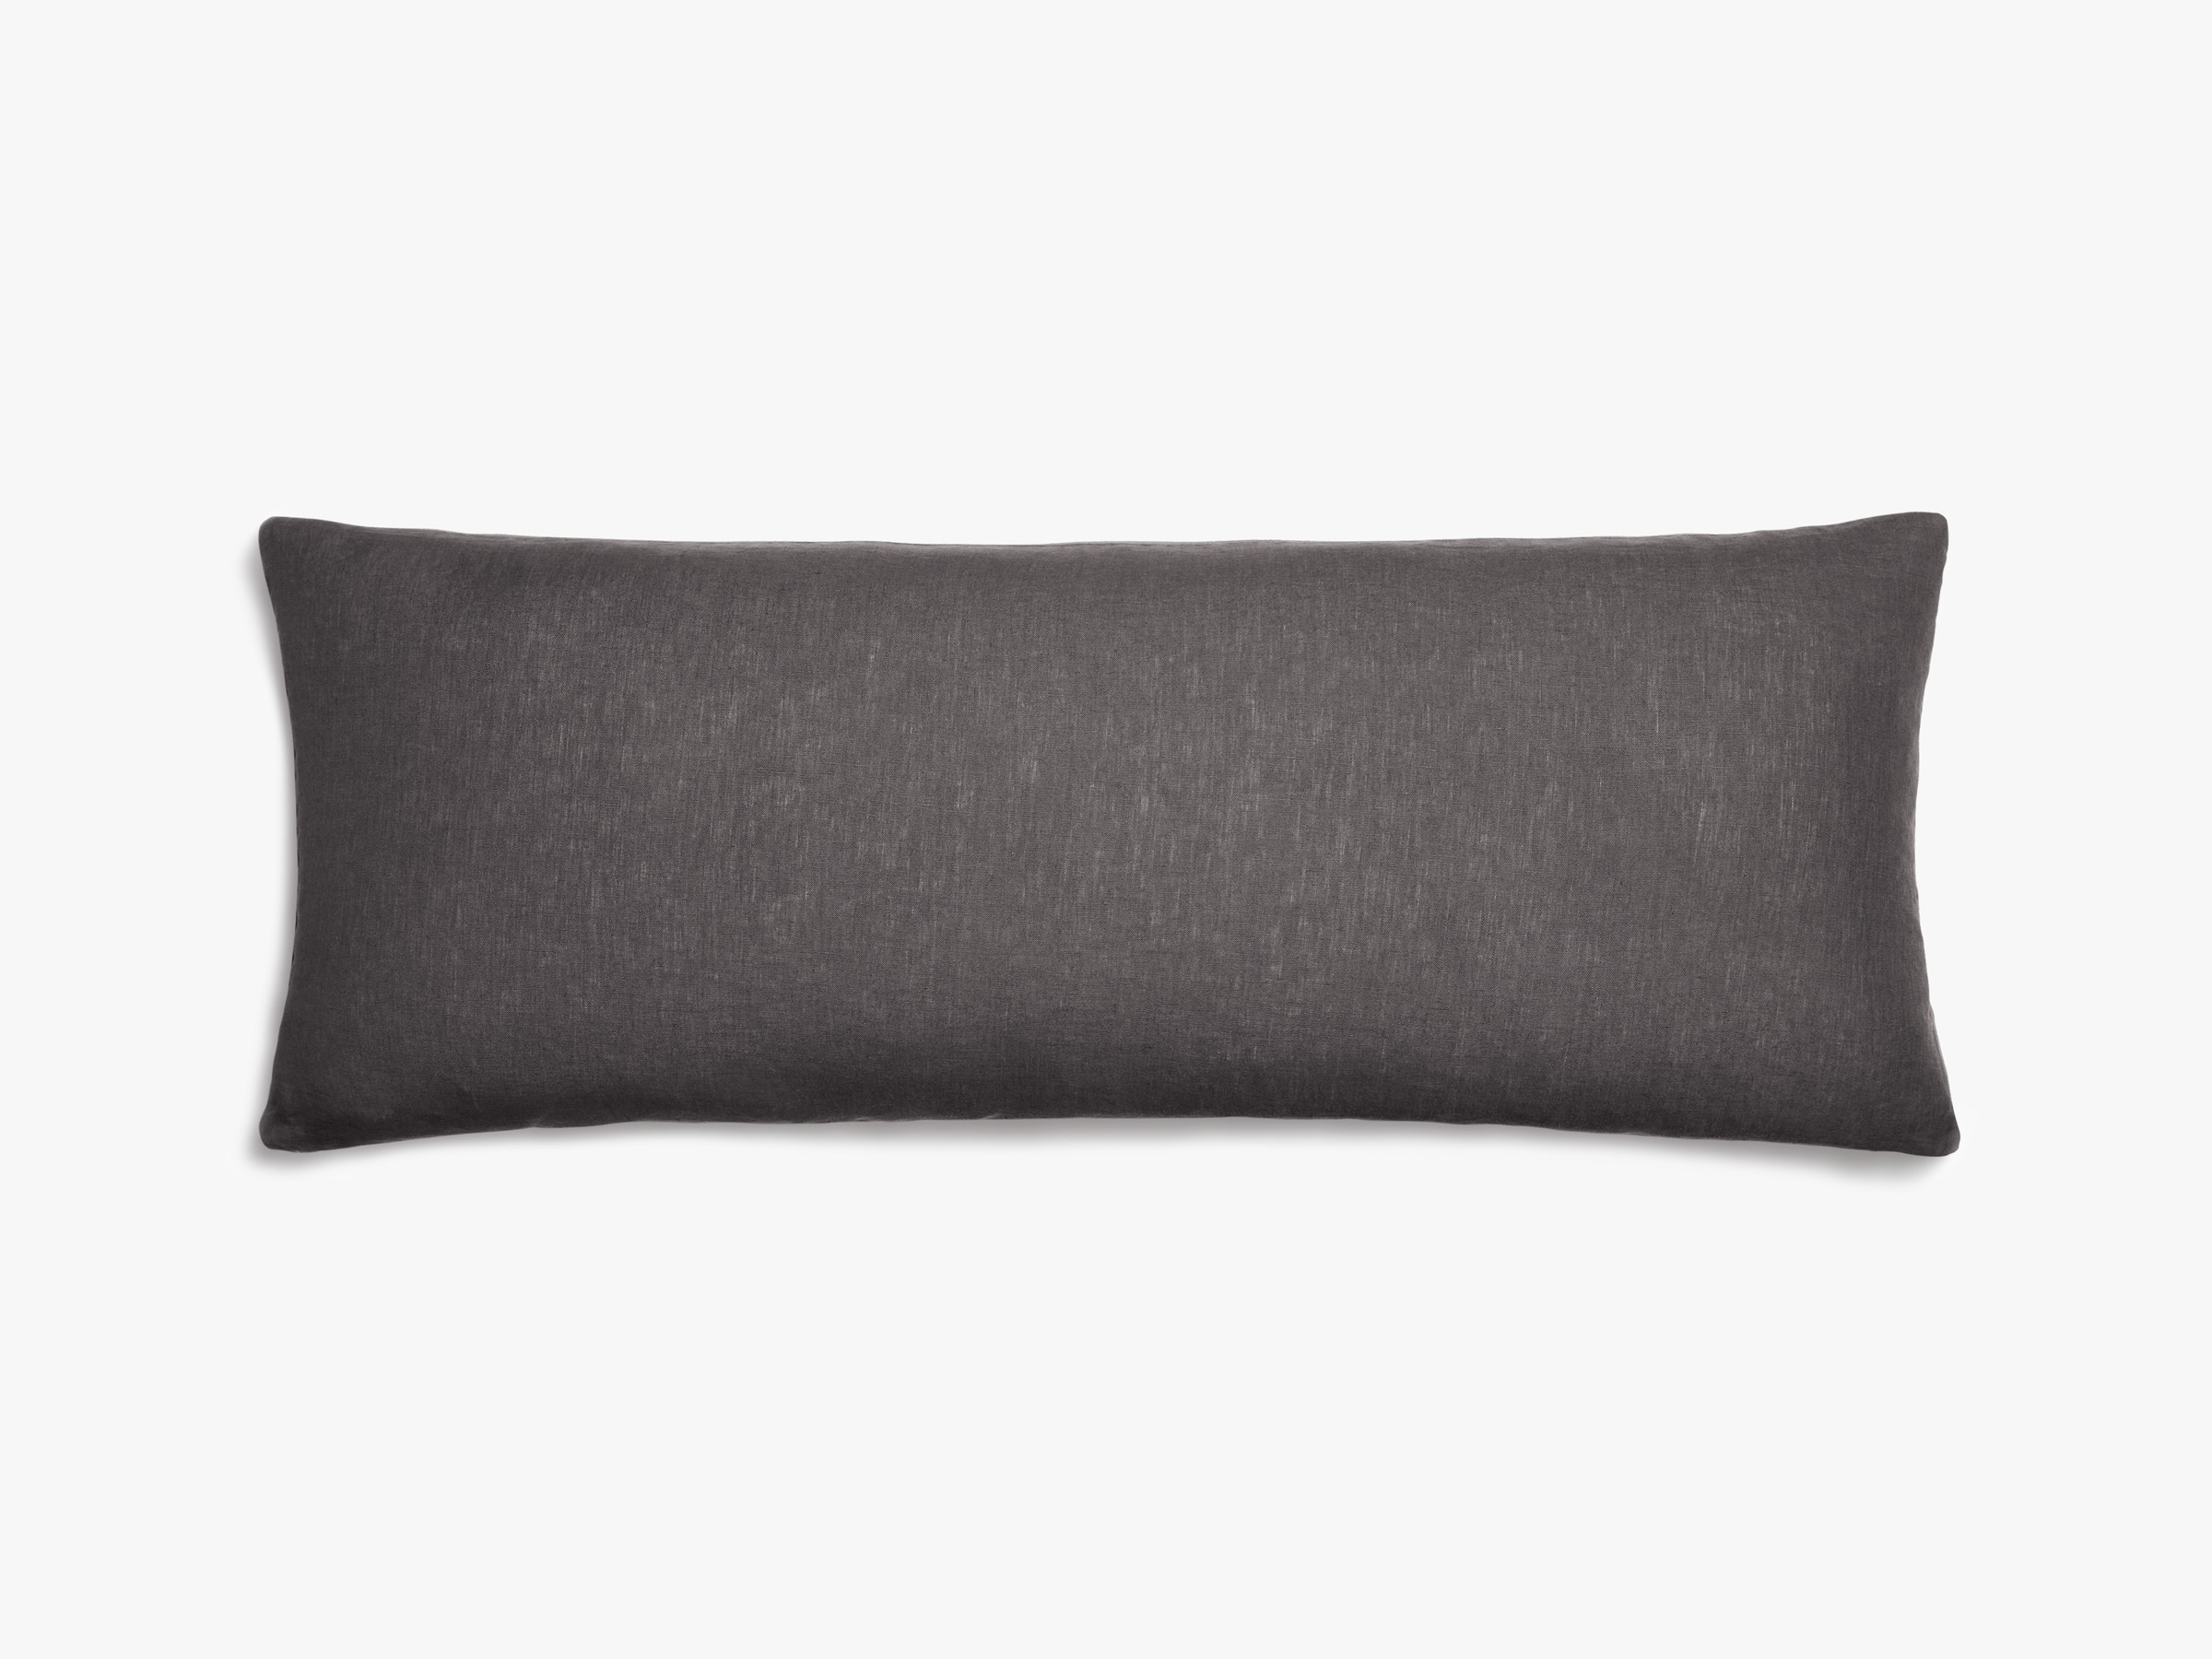 Steel Linen Pillow Cover